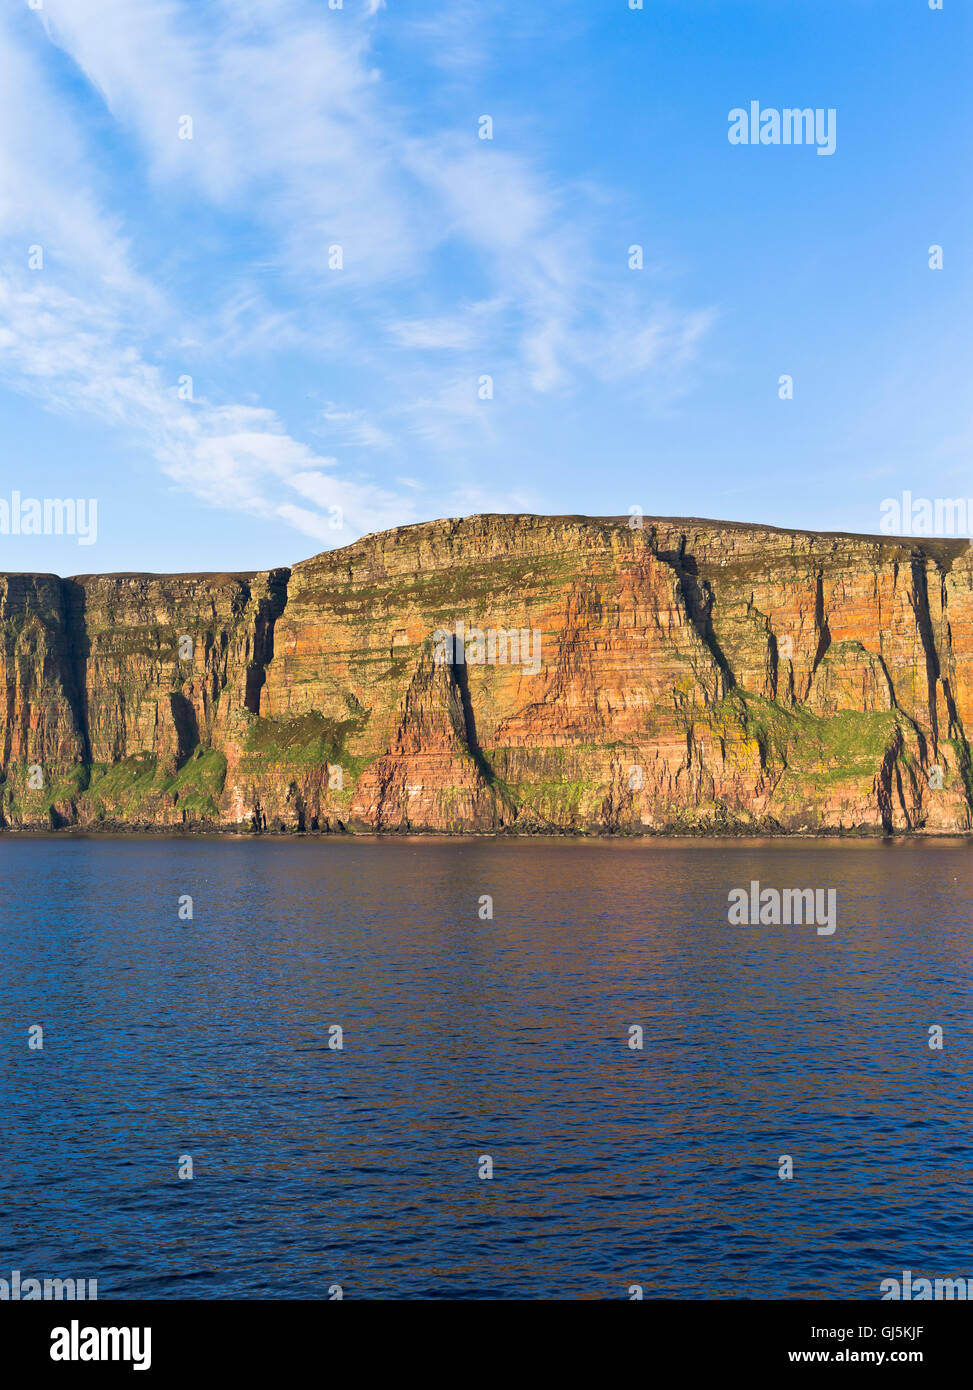 dh St Johns Head scotland HOY ISLAND ORKNEY ISLES grès Falaises Royaume-Uni les plus hautes falaises de mer falaise Banque D'Images